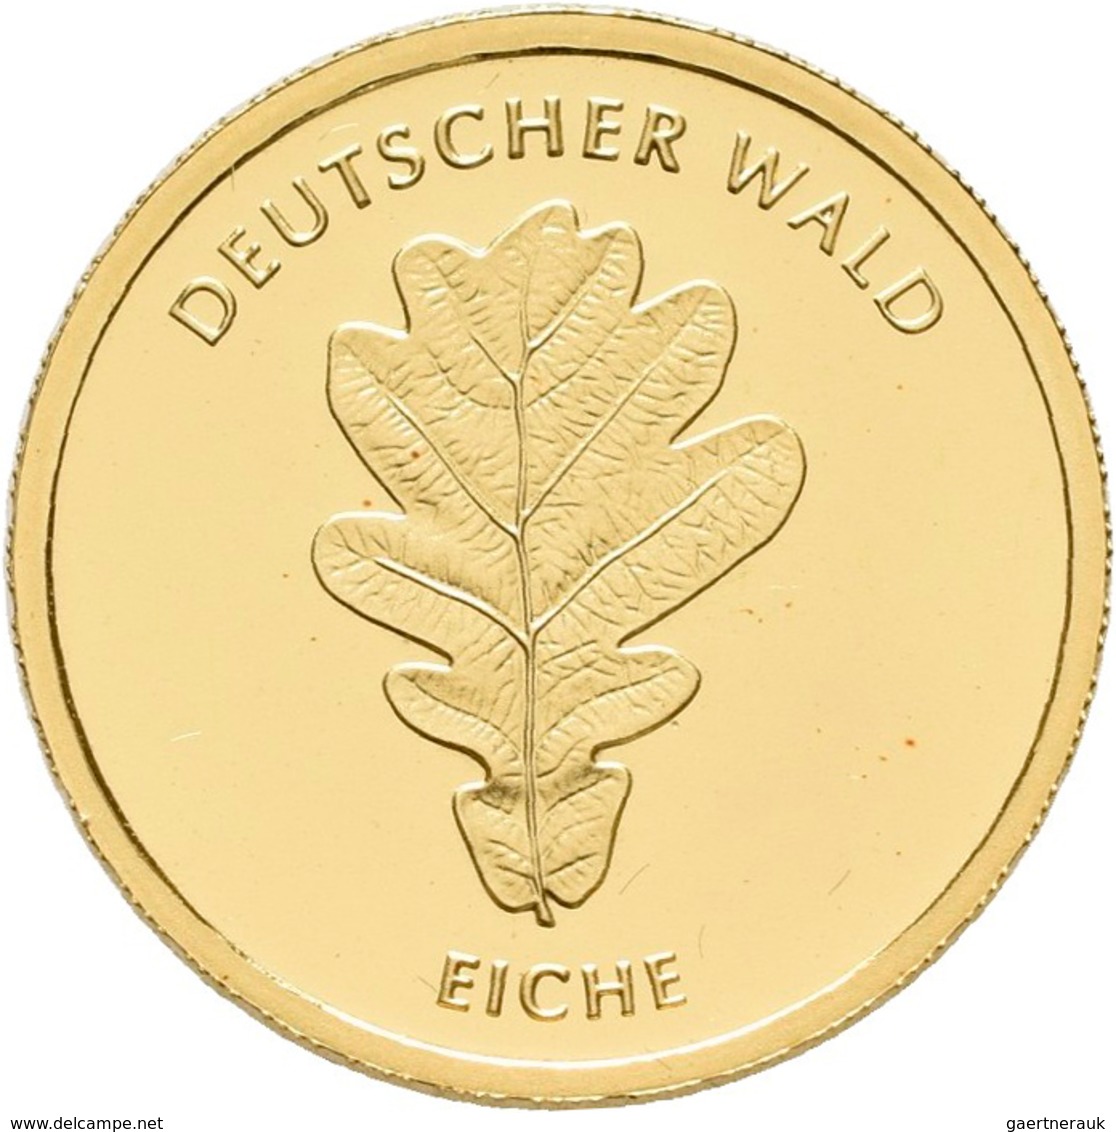 Deutschland - Anlagegold: 20 Euro 2010 Eiche A - Berlin. Serie Deutscher Wald. Jaeger 552. 3,89 G, 9 - Allemagne